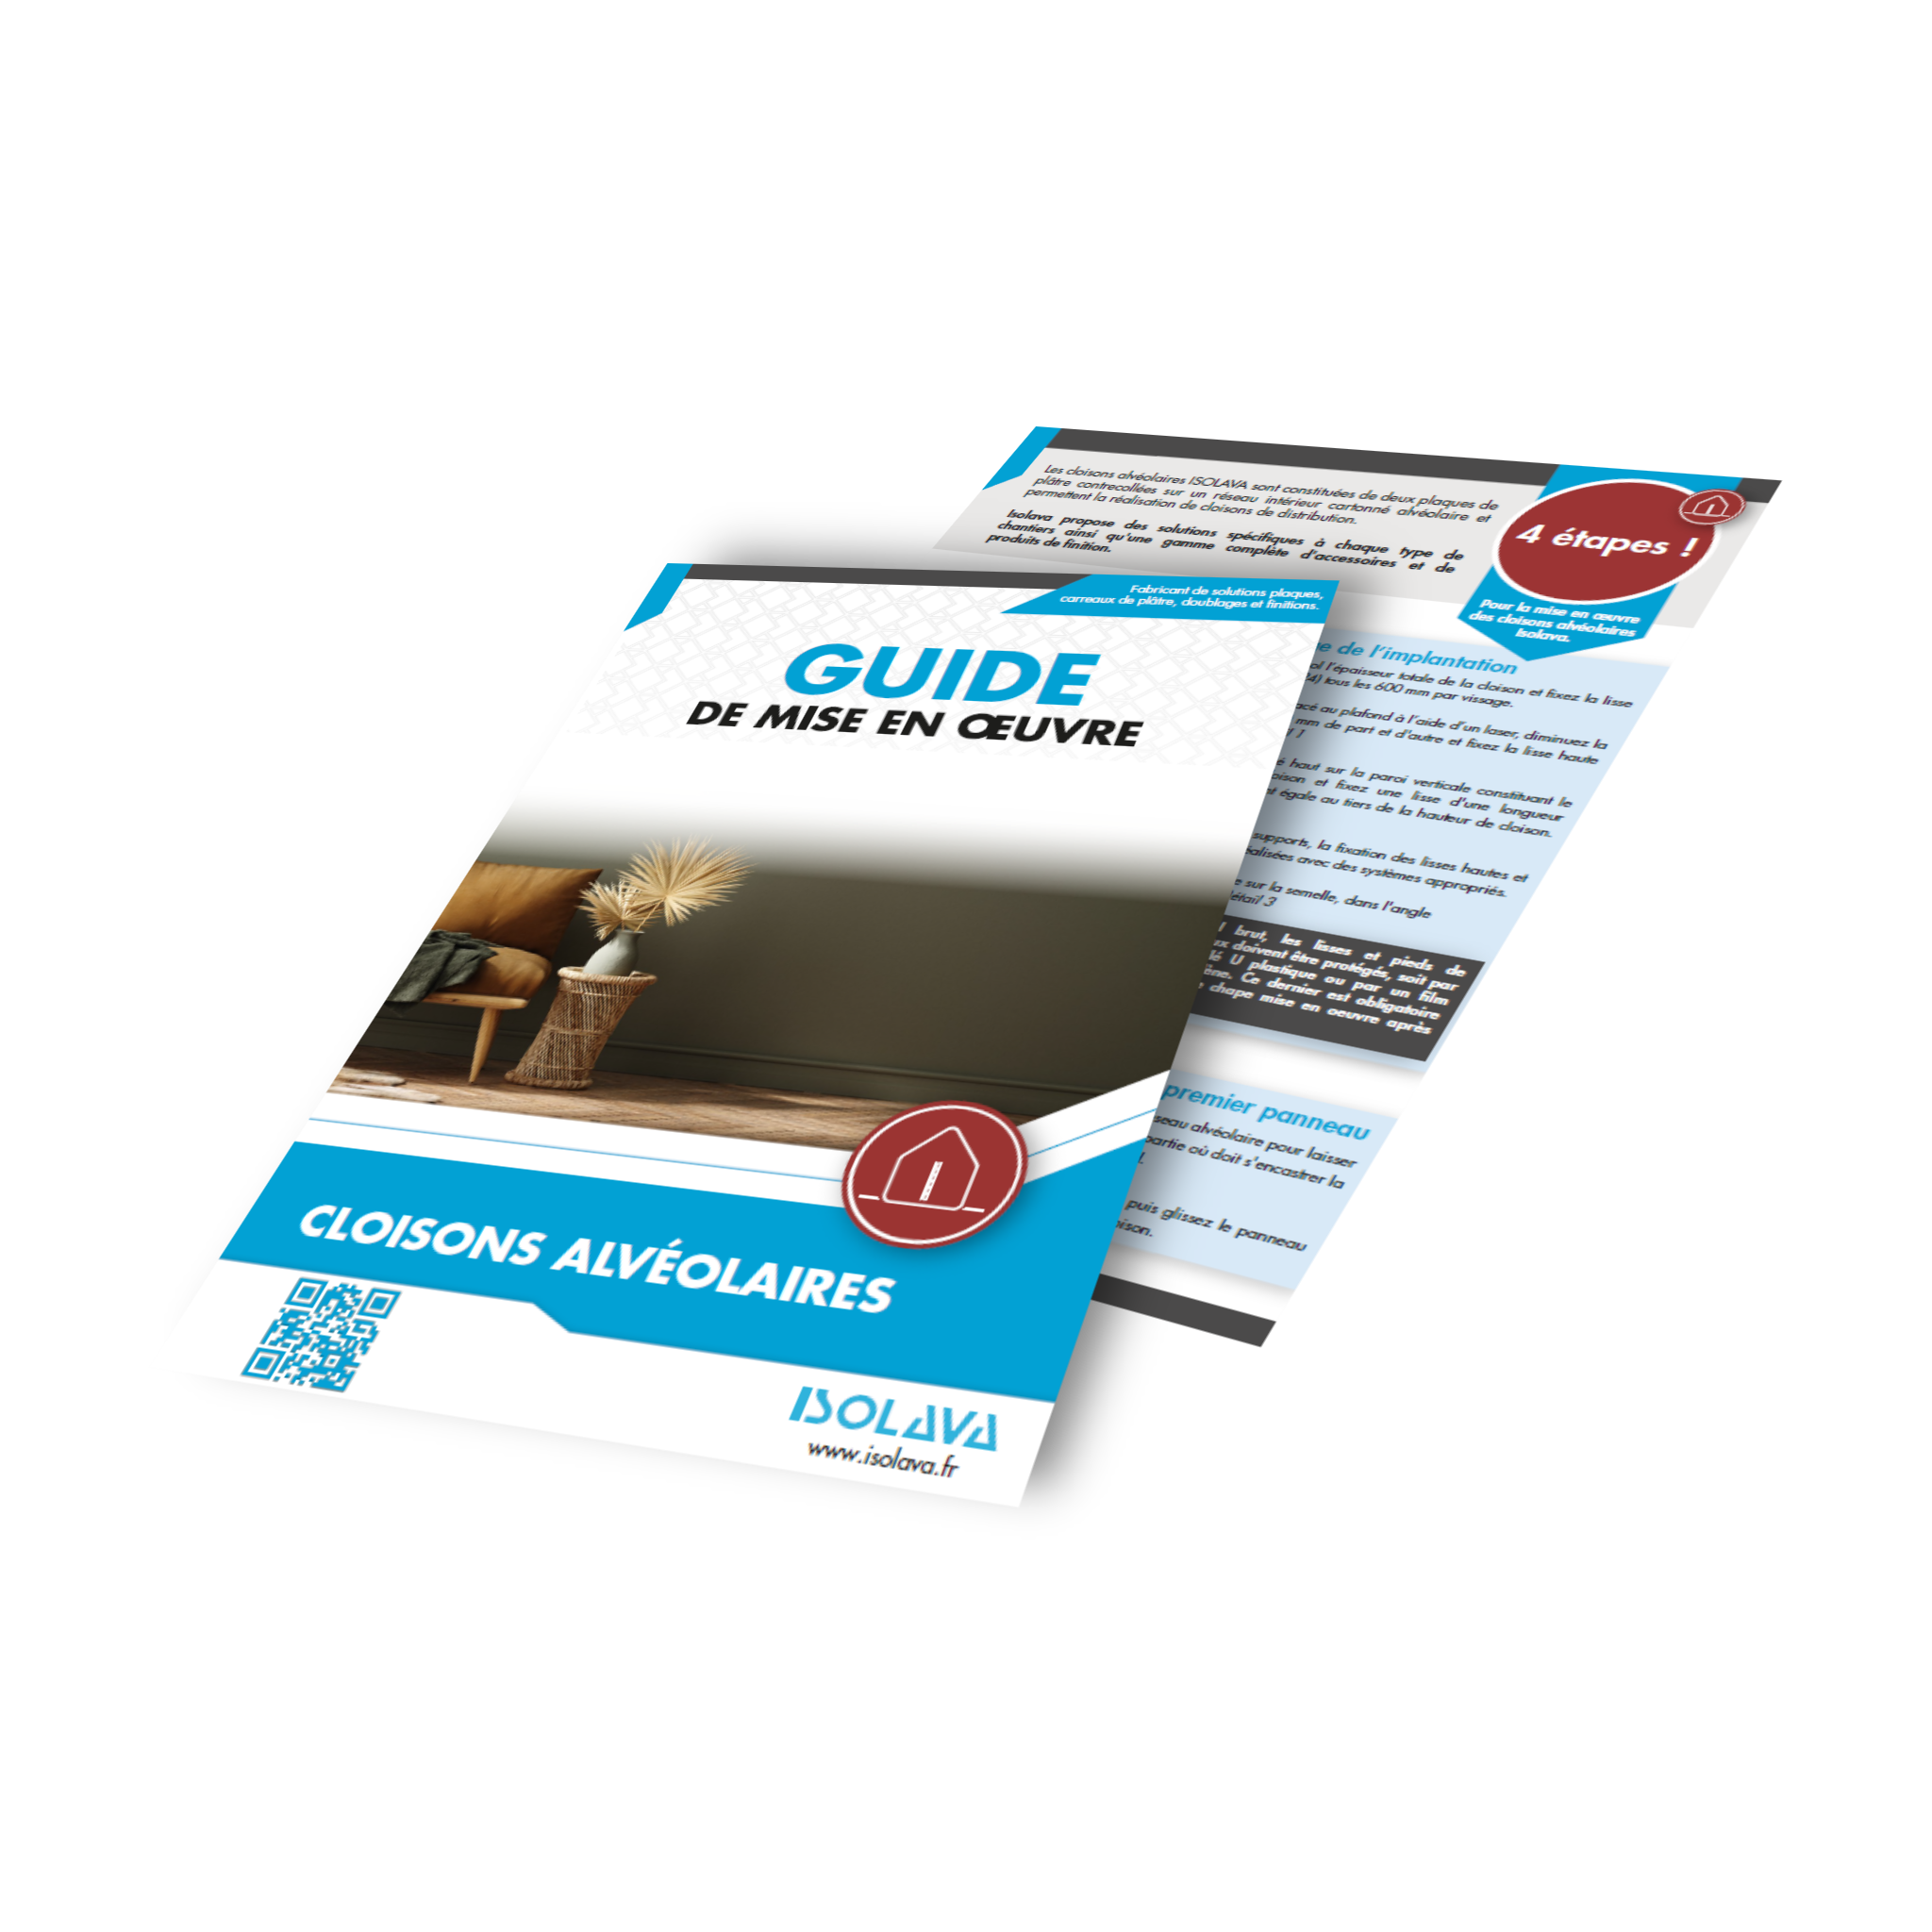 Visuel Guide de mise en oeuvre - CLOISONS ALVEOLAIRES V2